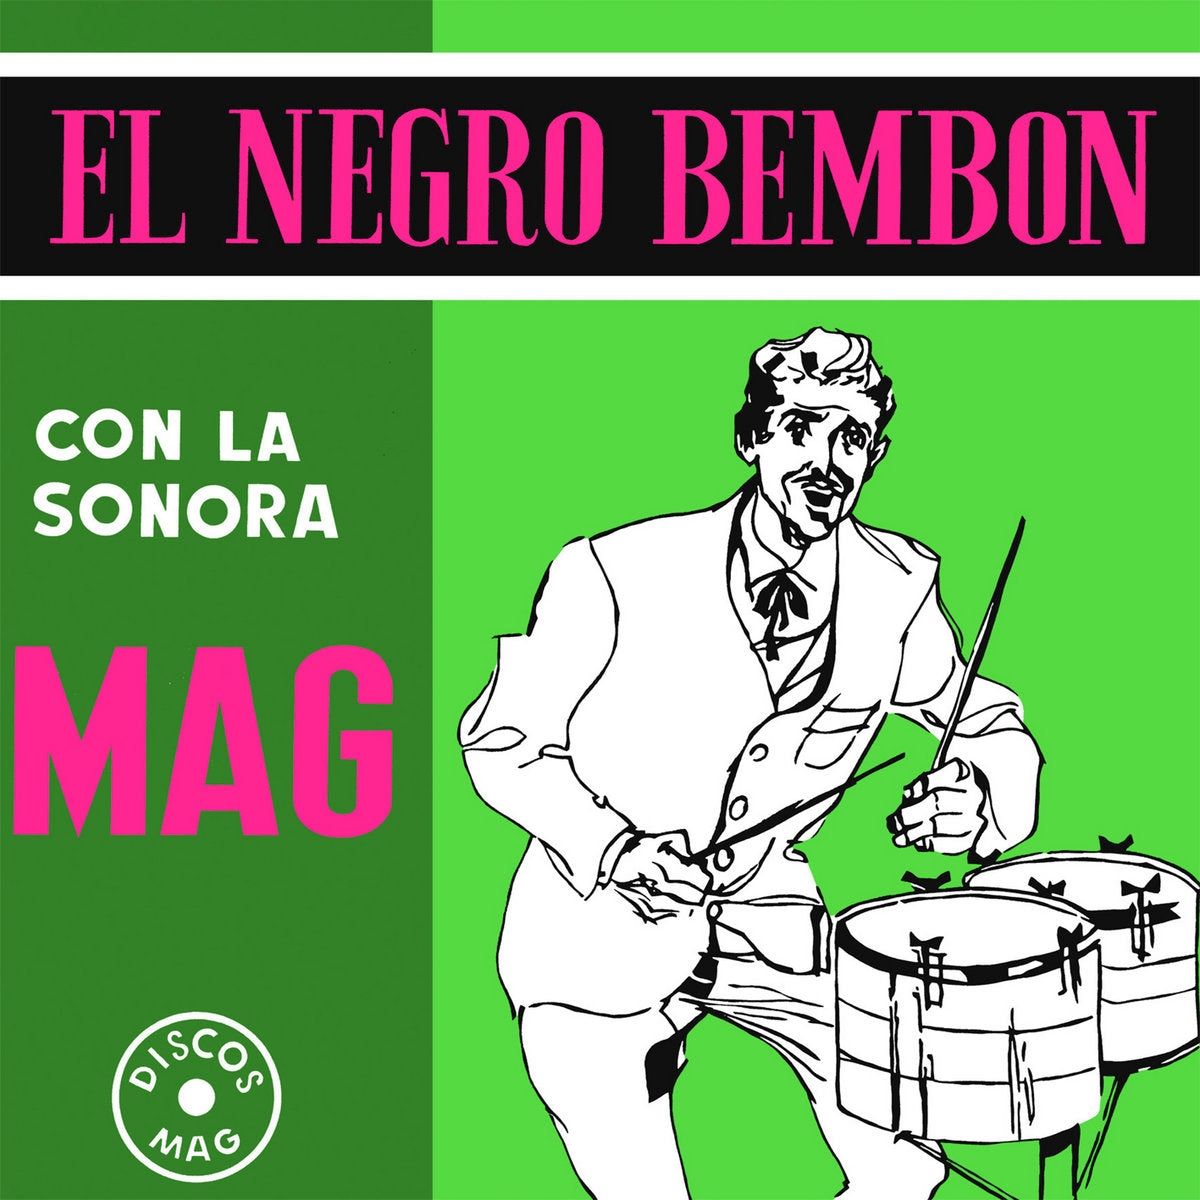 El Negro Bembón (New LP)